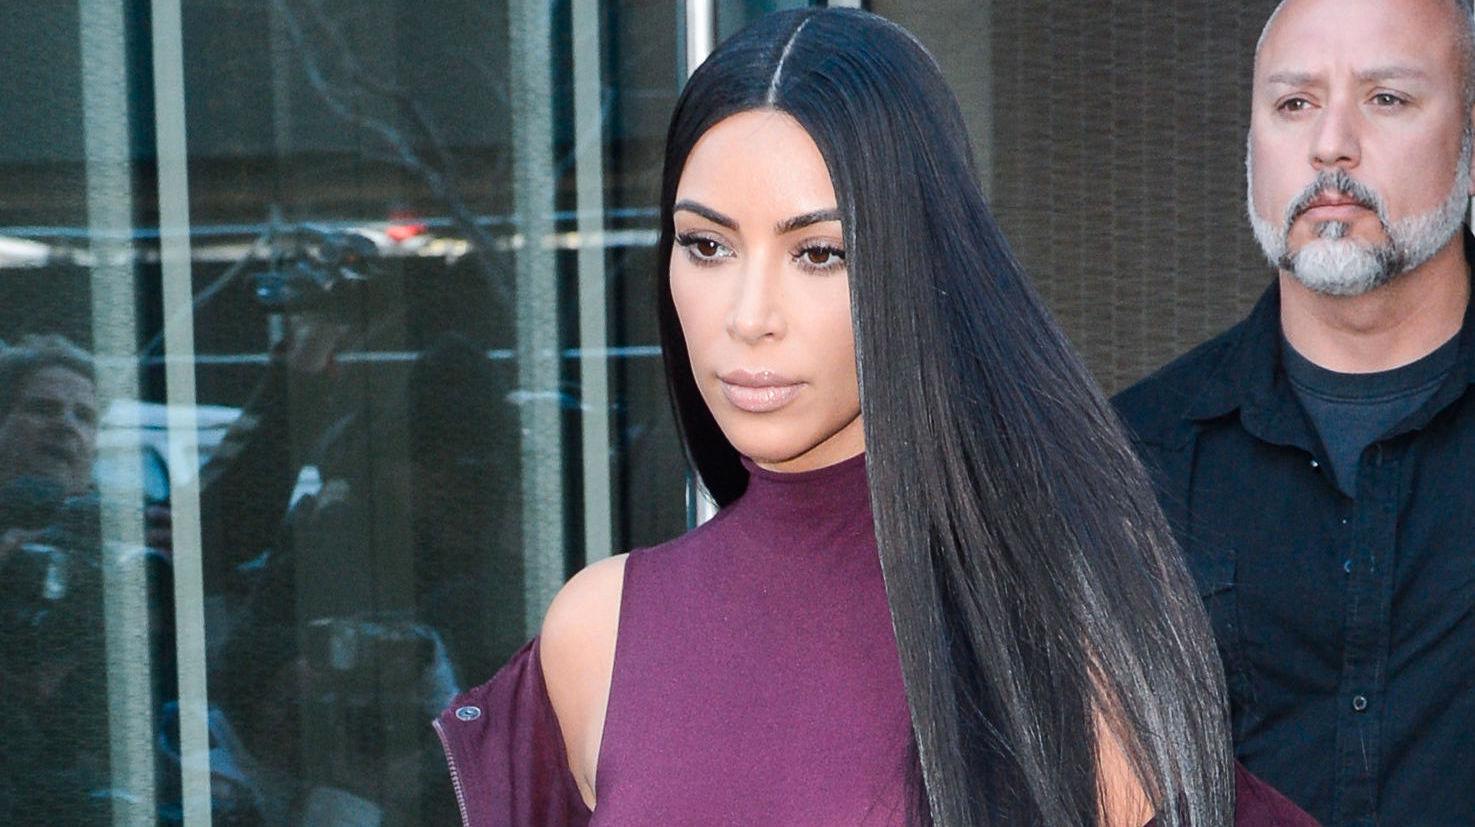 STØTTESPILLER: Kim Kardashian har hengt på ektemannen Kanye West under moteuken i New York, og var selvsagt også på showet hans. Foto: Getty Images